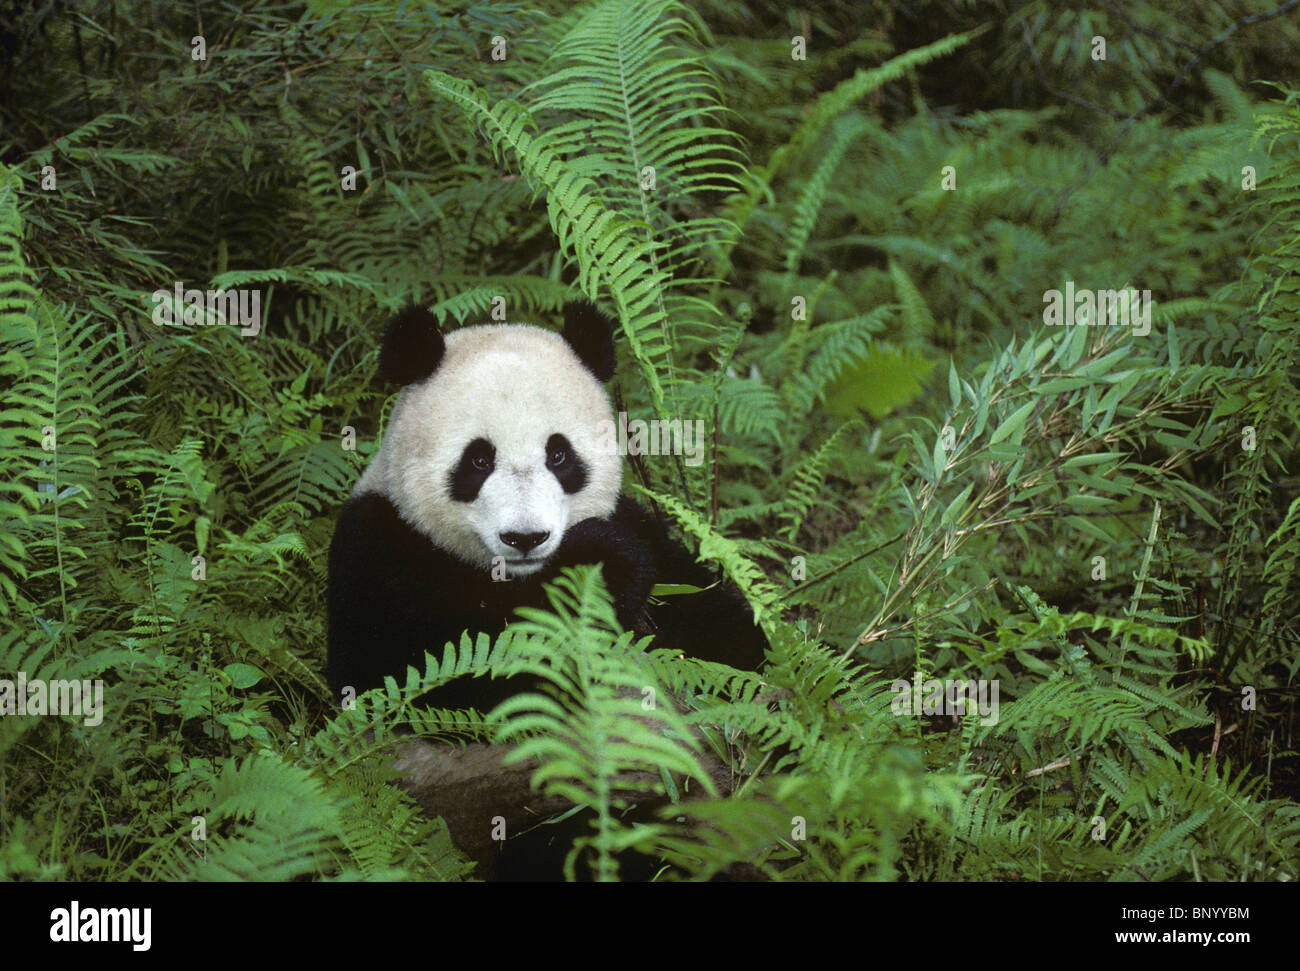 Giant panda feeding on bamboo amongst ferns, Wolong, Sichuan Province, China Stock Photo